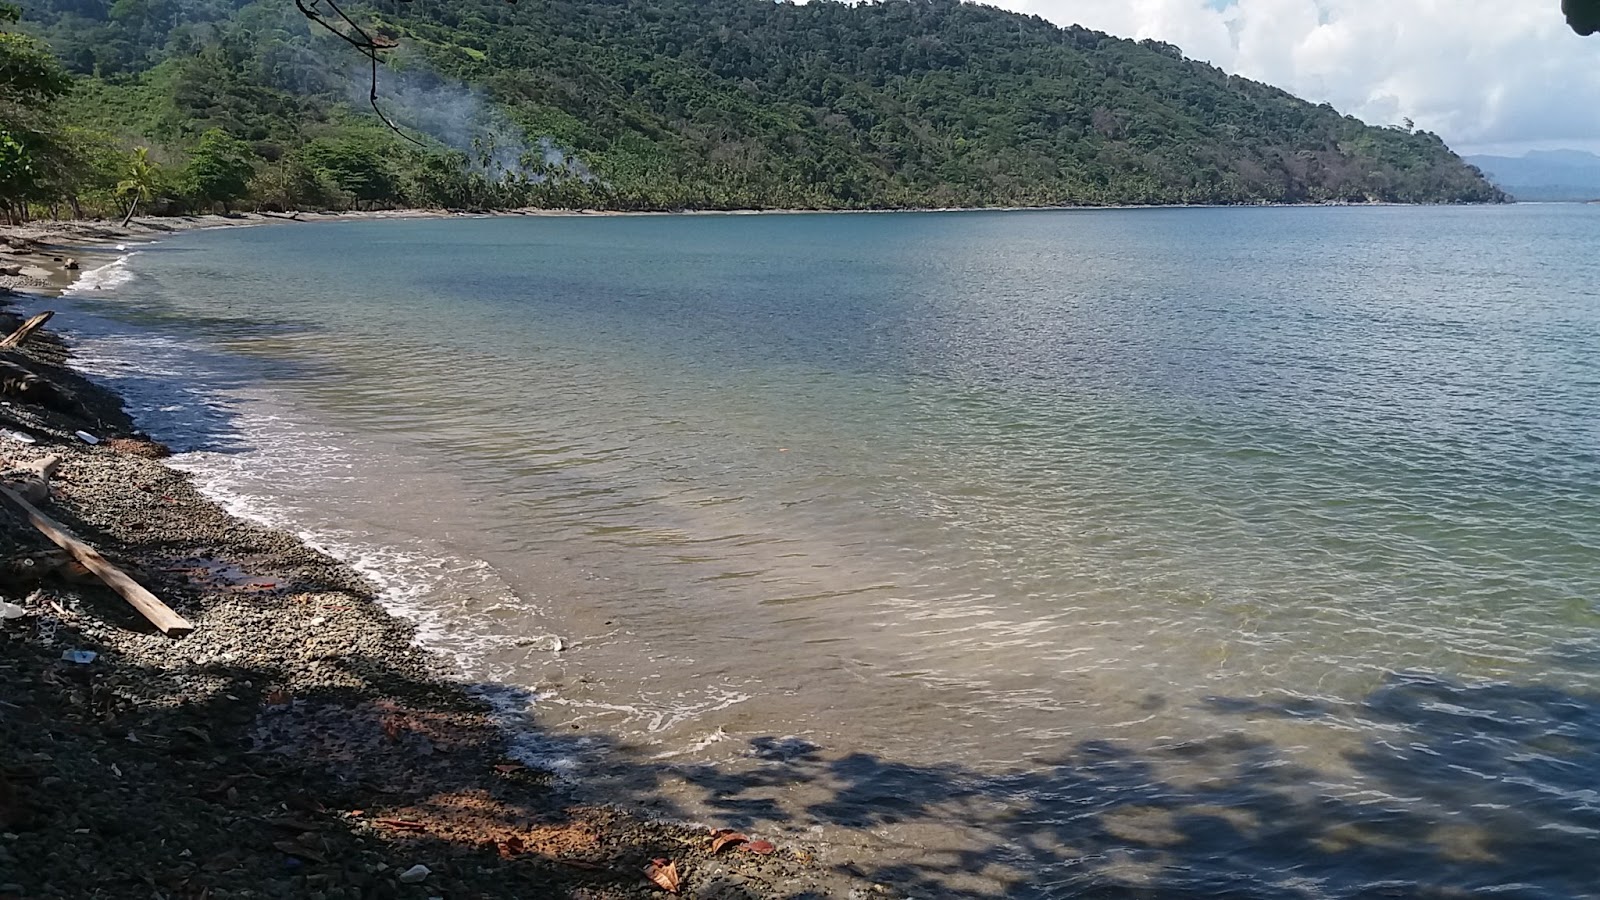 Foto von Puerto Obaldia beach mit heller sand&kies Oberfläche